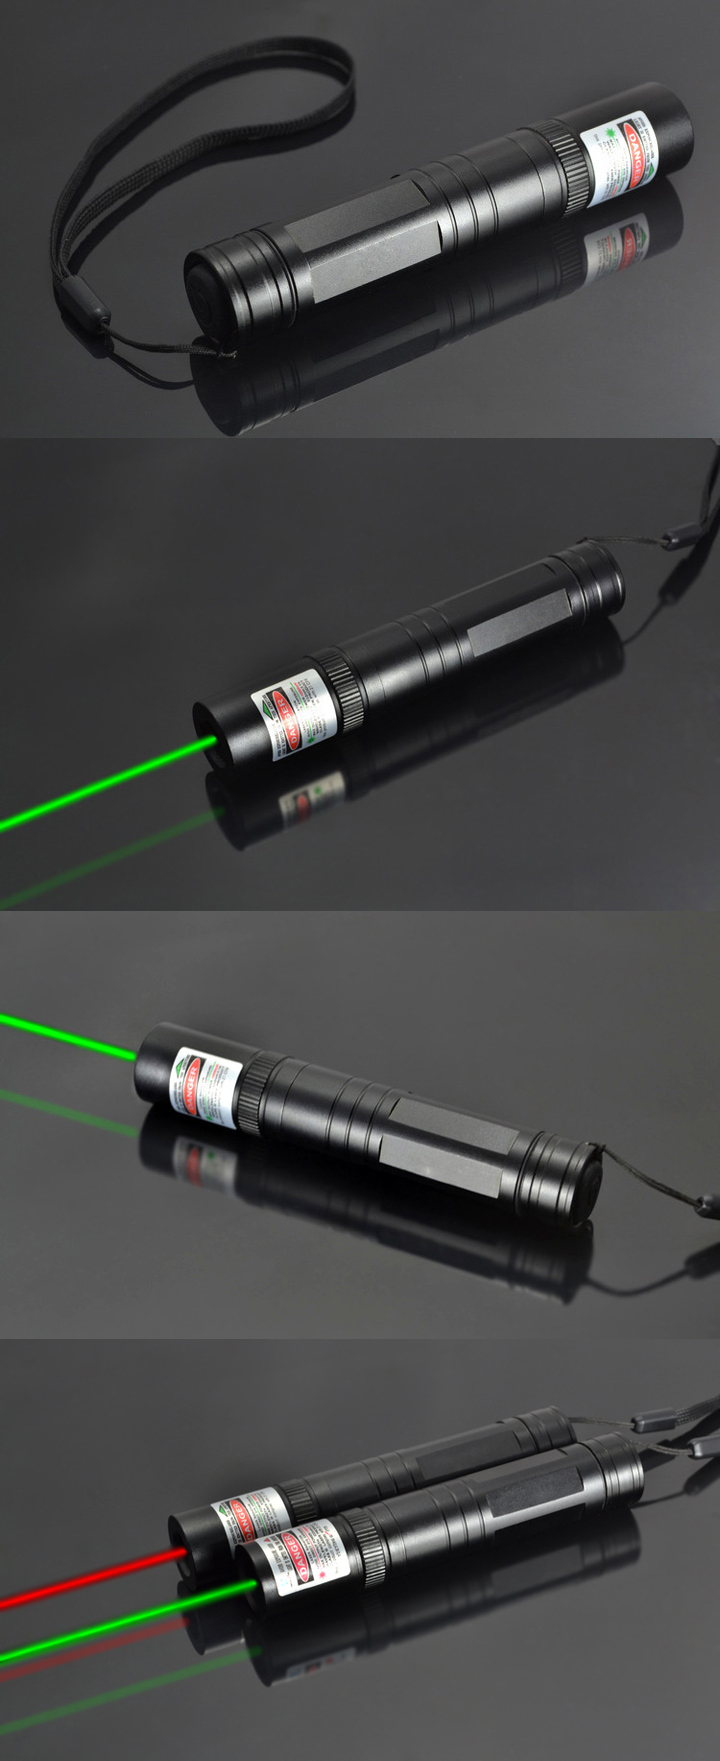 Pointeur laser pour astronomie